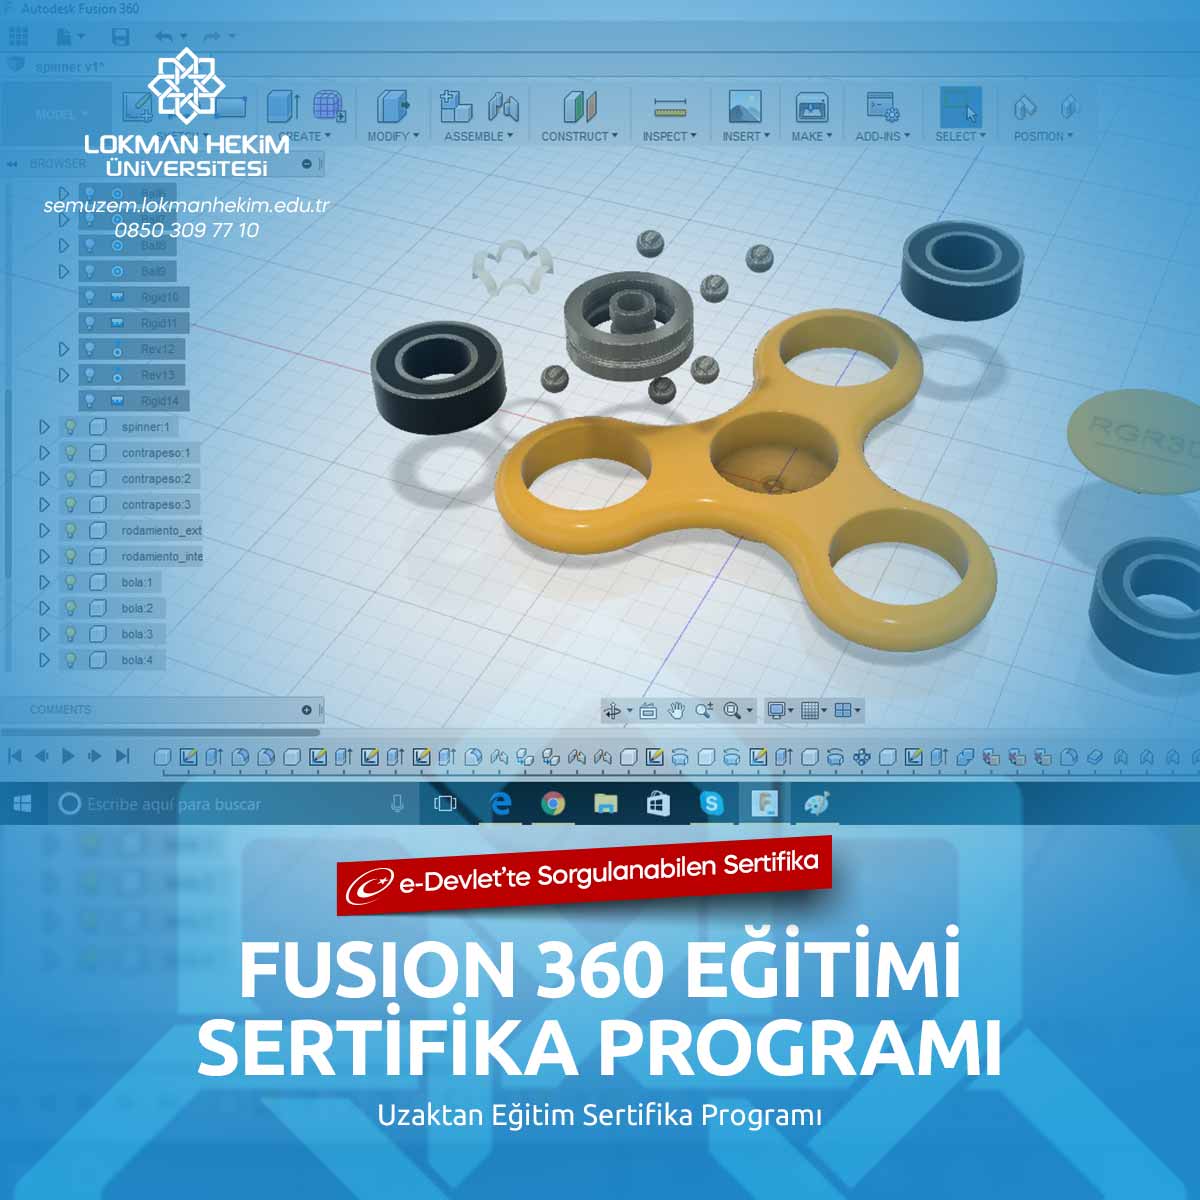 Fusion 360 Sertifikası Nedir, Nasıl Alınır?